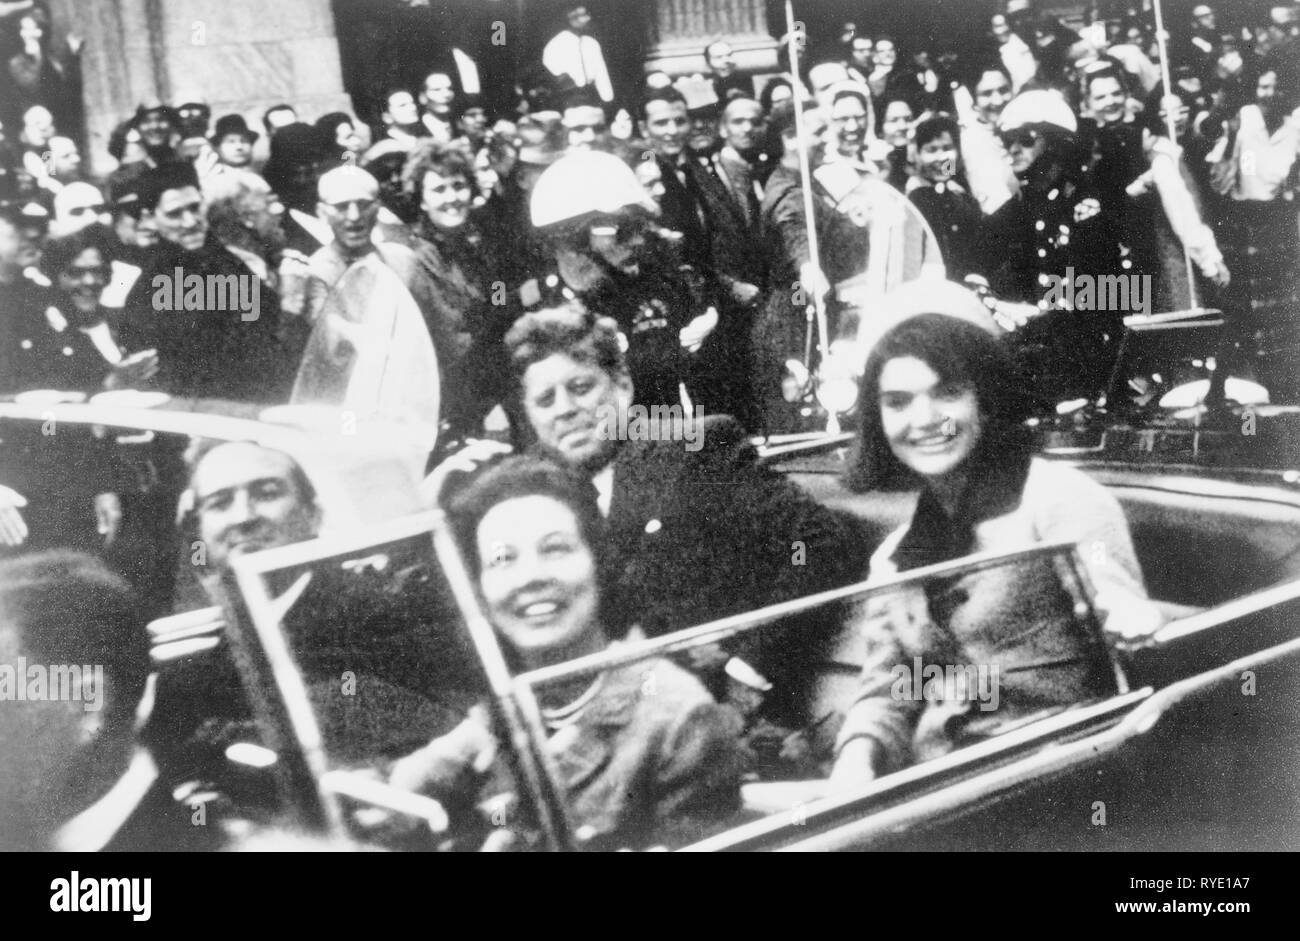 Präsident John F. Kennedy motorcade, Dallas, Texas, Freitag, 22. November 1963. Auch in der präsidentenwagen sind Jackie Kennedy, Texas Gouverneur John Connally und seine Frau, Nellie. Stockfoto